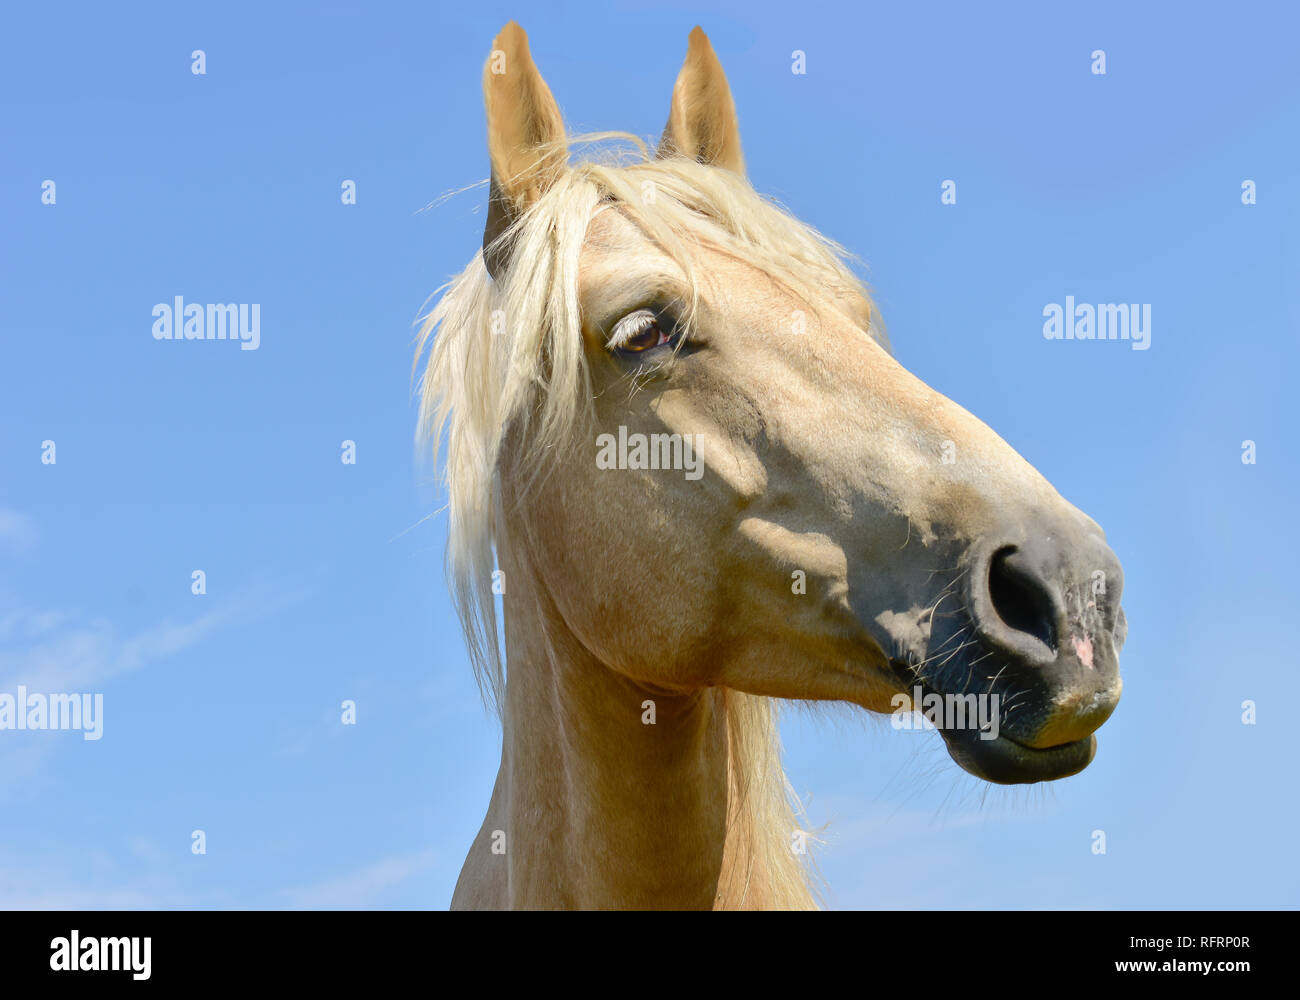 Pferdekopf auf Weiß isoliert Stockfoto